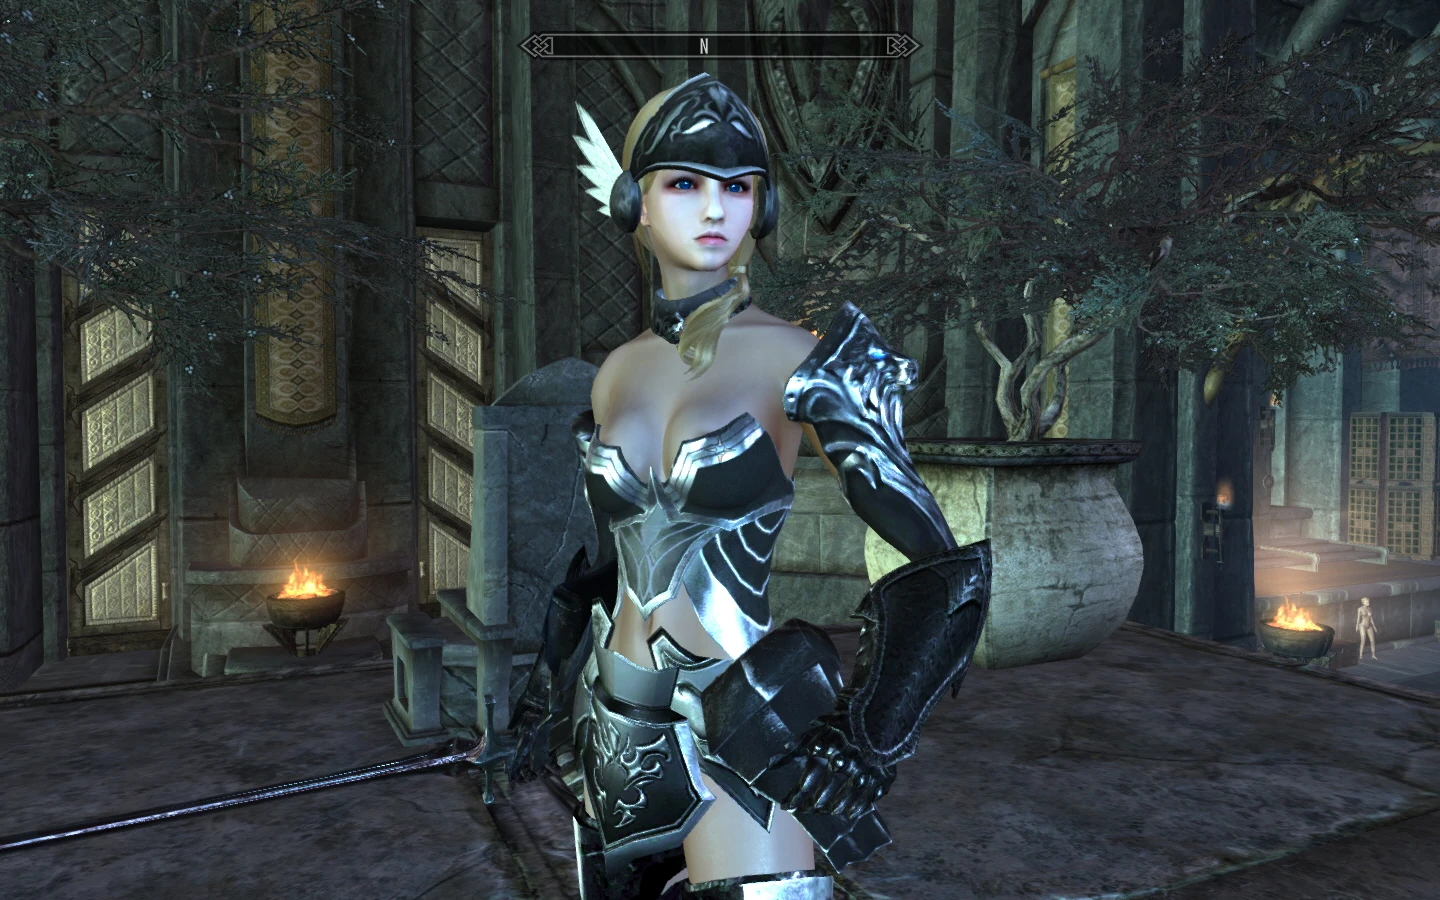 valkyrie armor helmet damage at skyrim nexus mods and community.